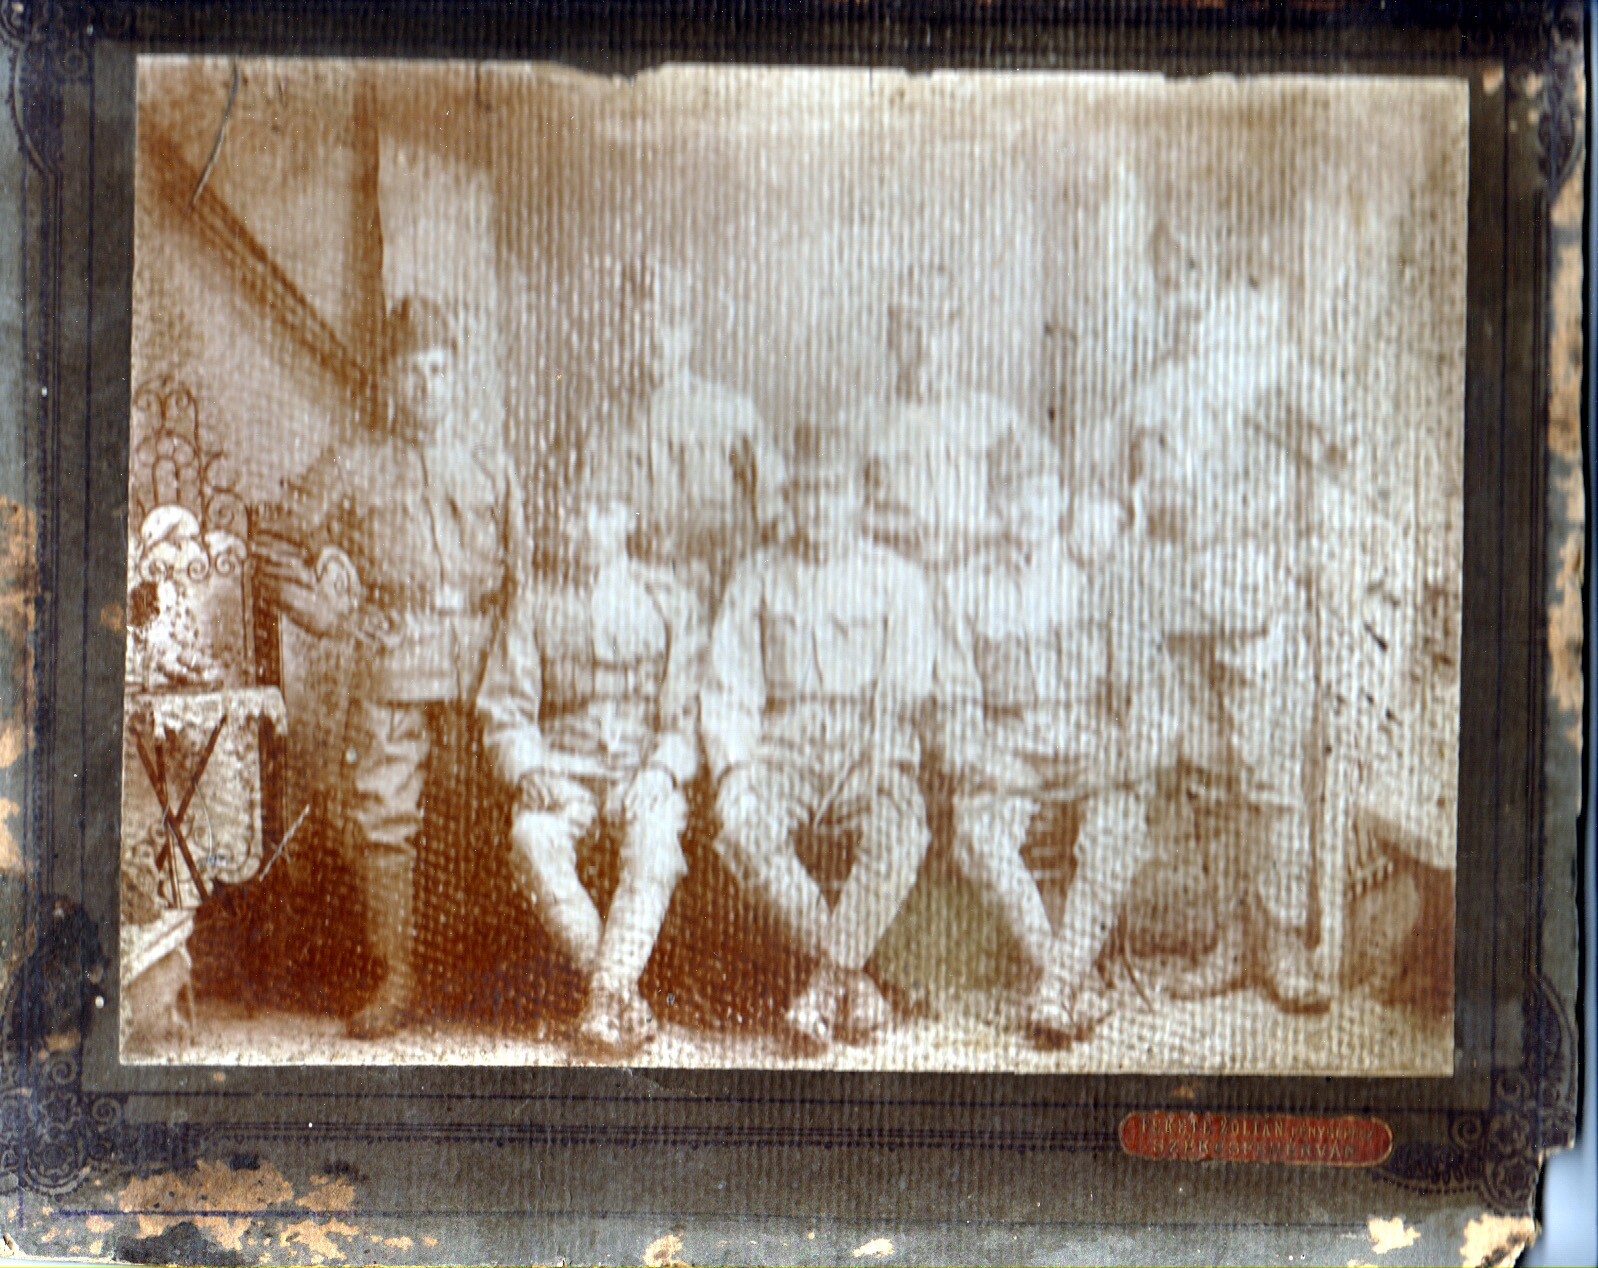 K. u. k. katonákat ábrázoló műtermi csoportkép (Rippl-Rónai Múzeum CC BY-NC-SA)